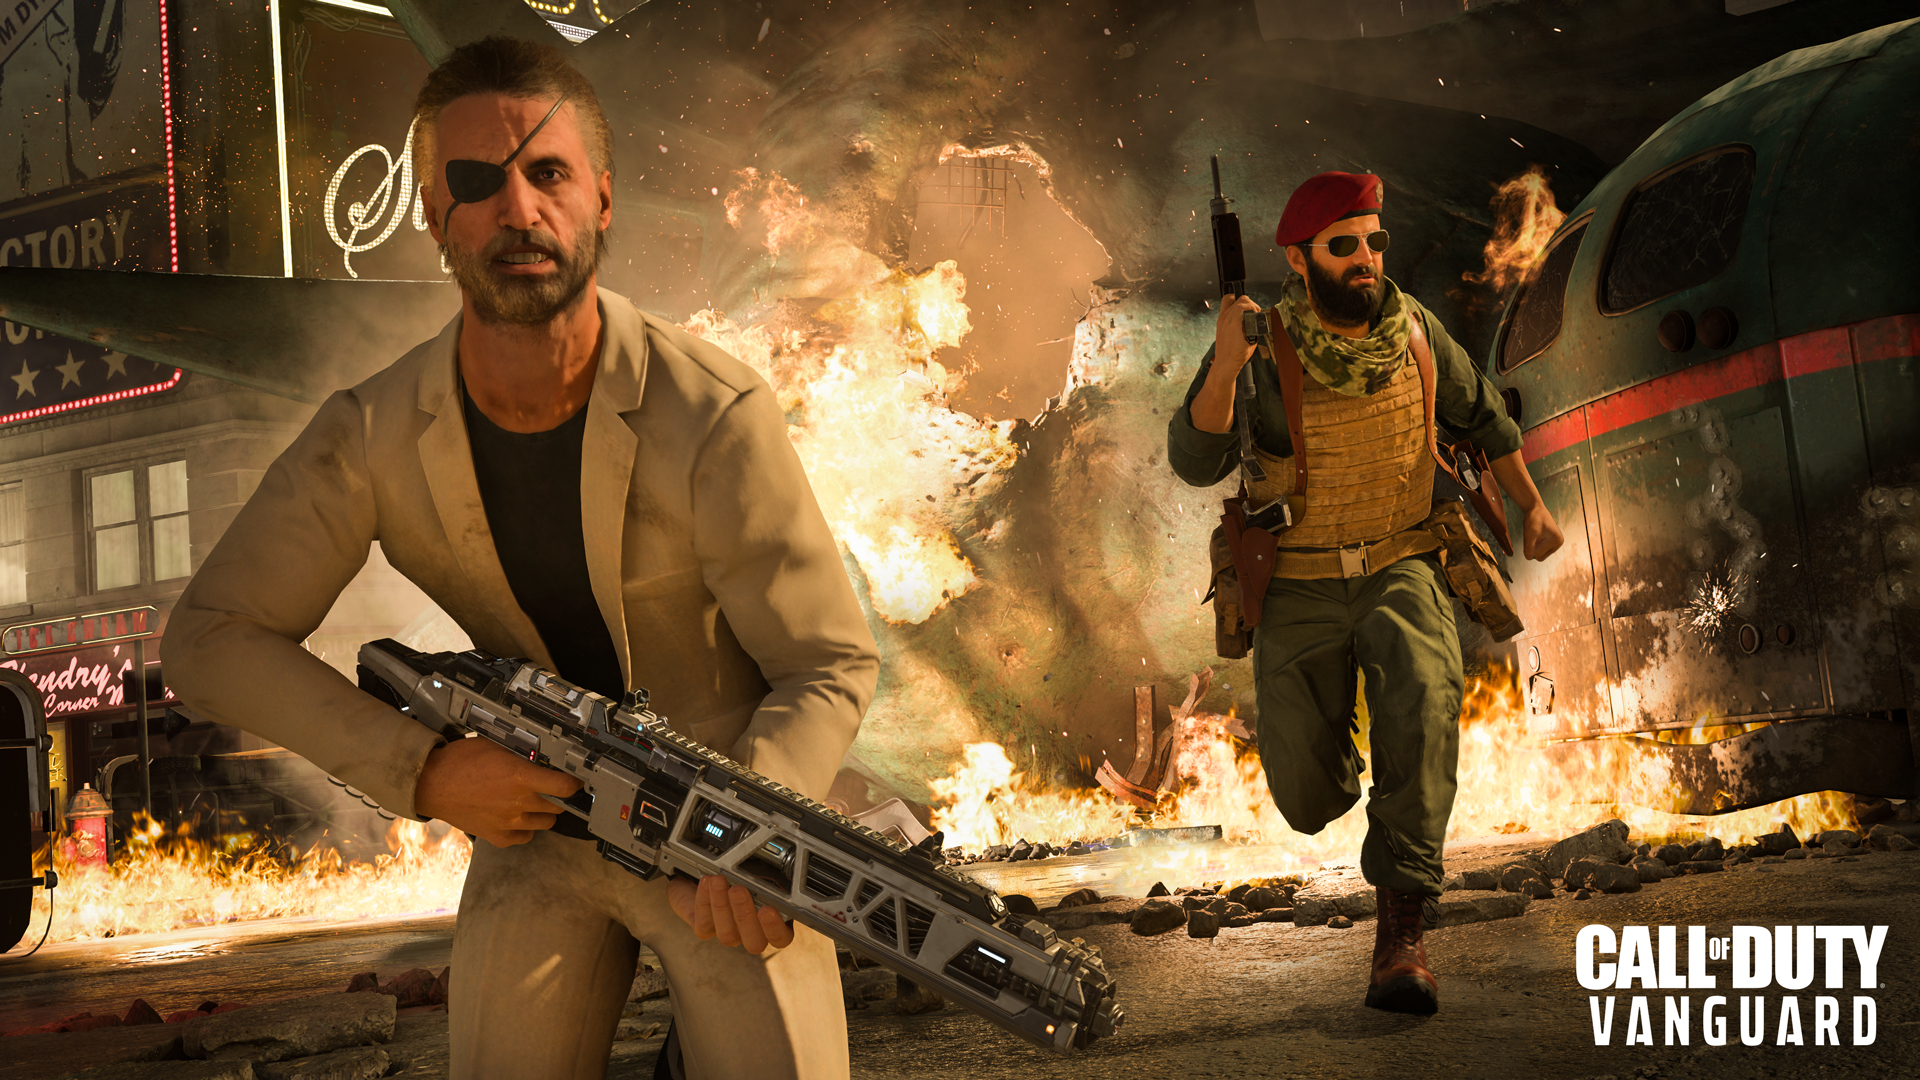 Call of Duty: Vanguard e Warzone — Anúncio da Temporada Última